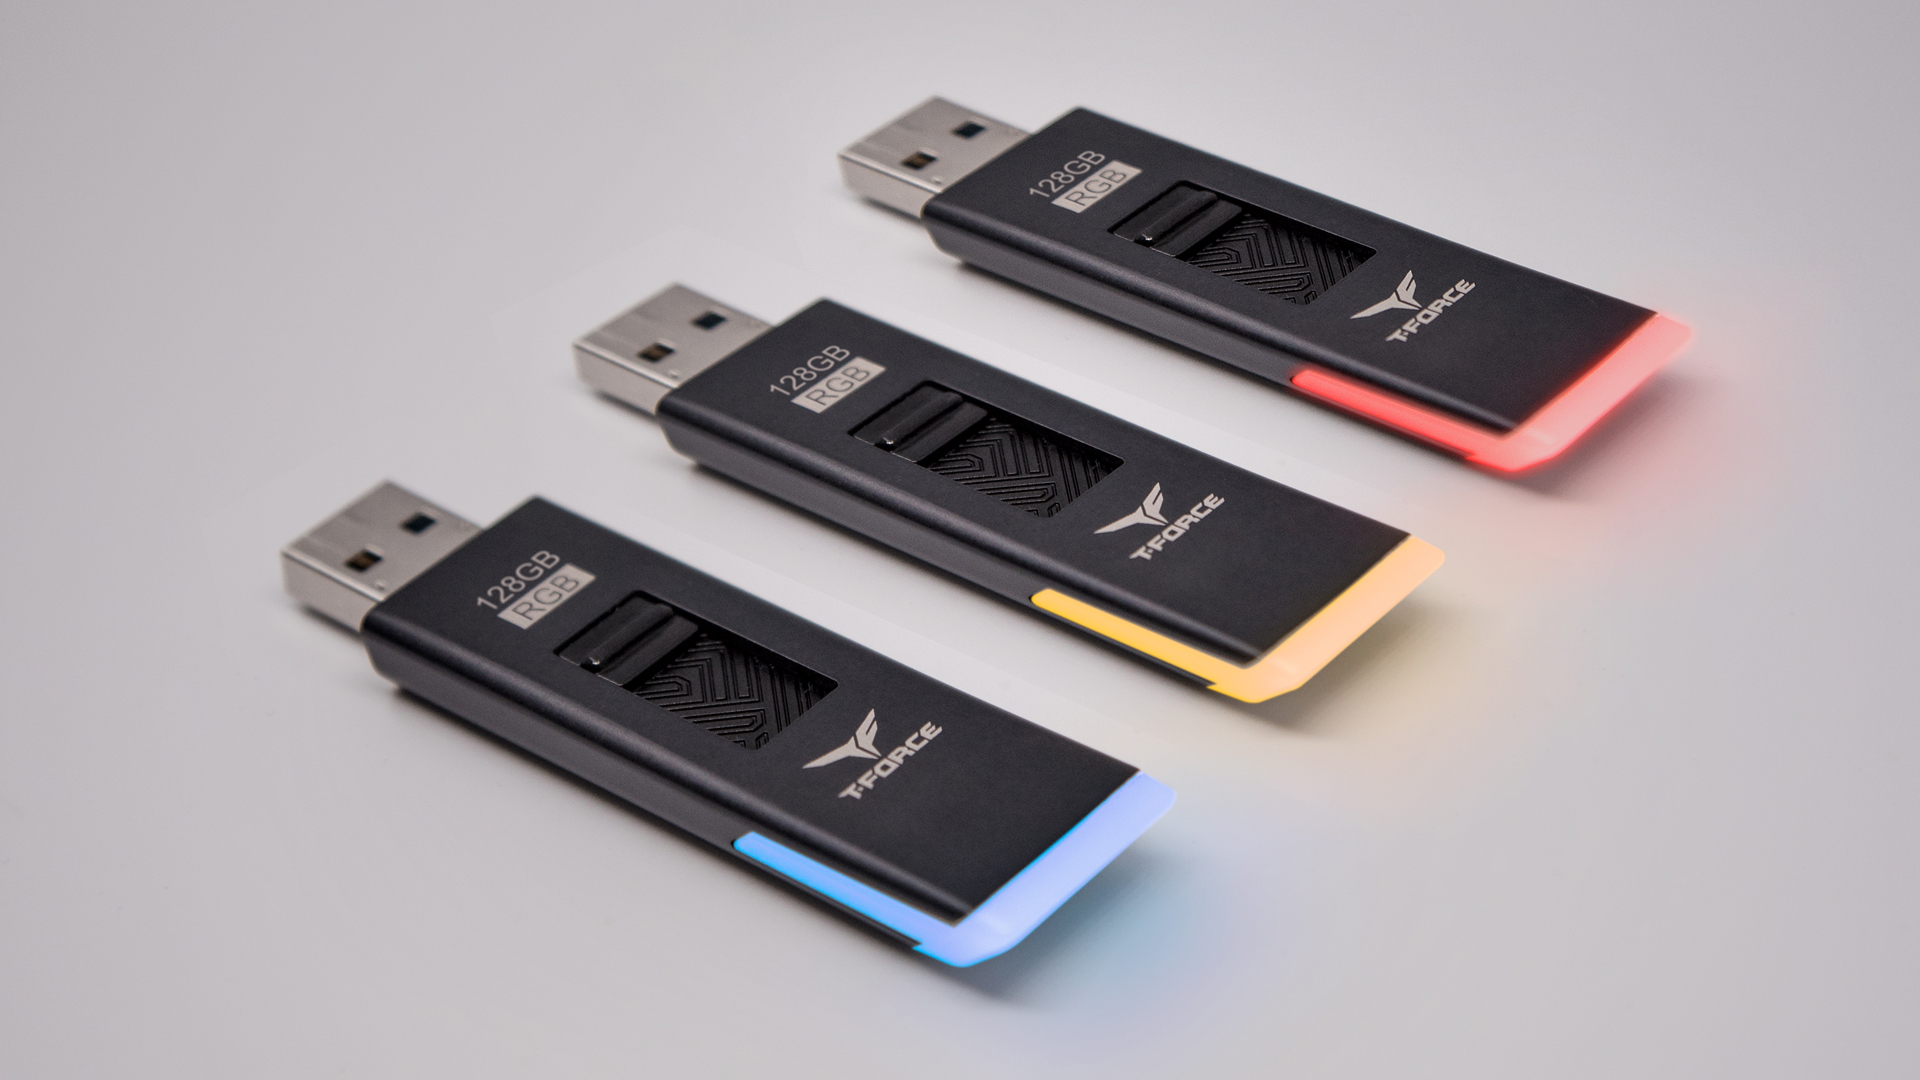 T-FORCE SPARK スマートキュー USBメモリー / 十銓科技股份有限公司（Team Group）